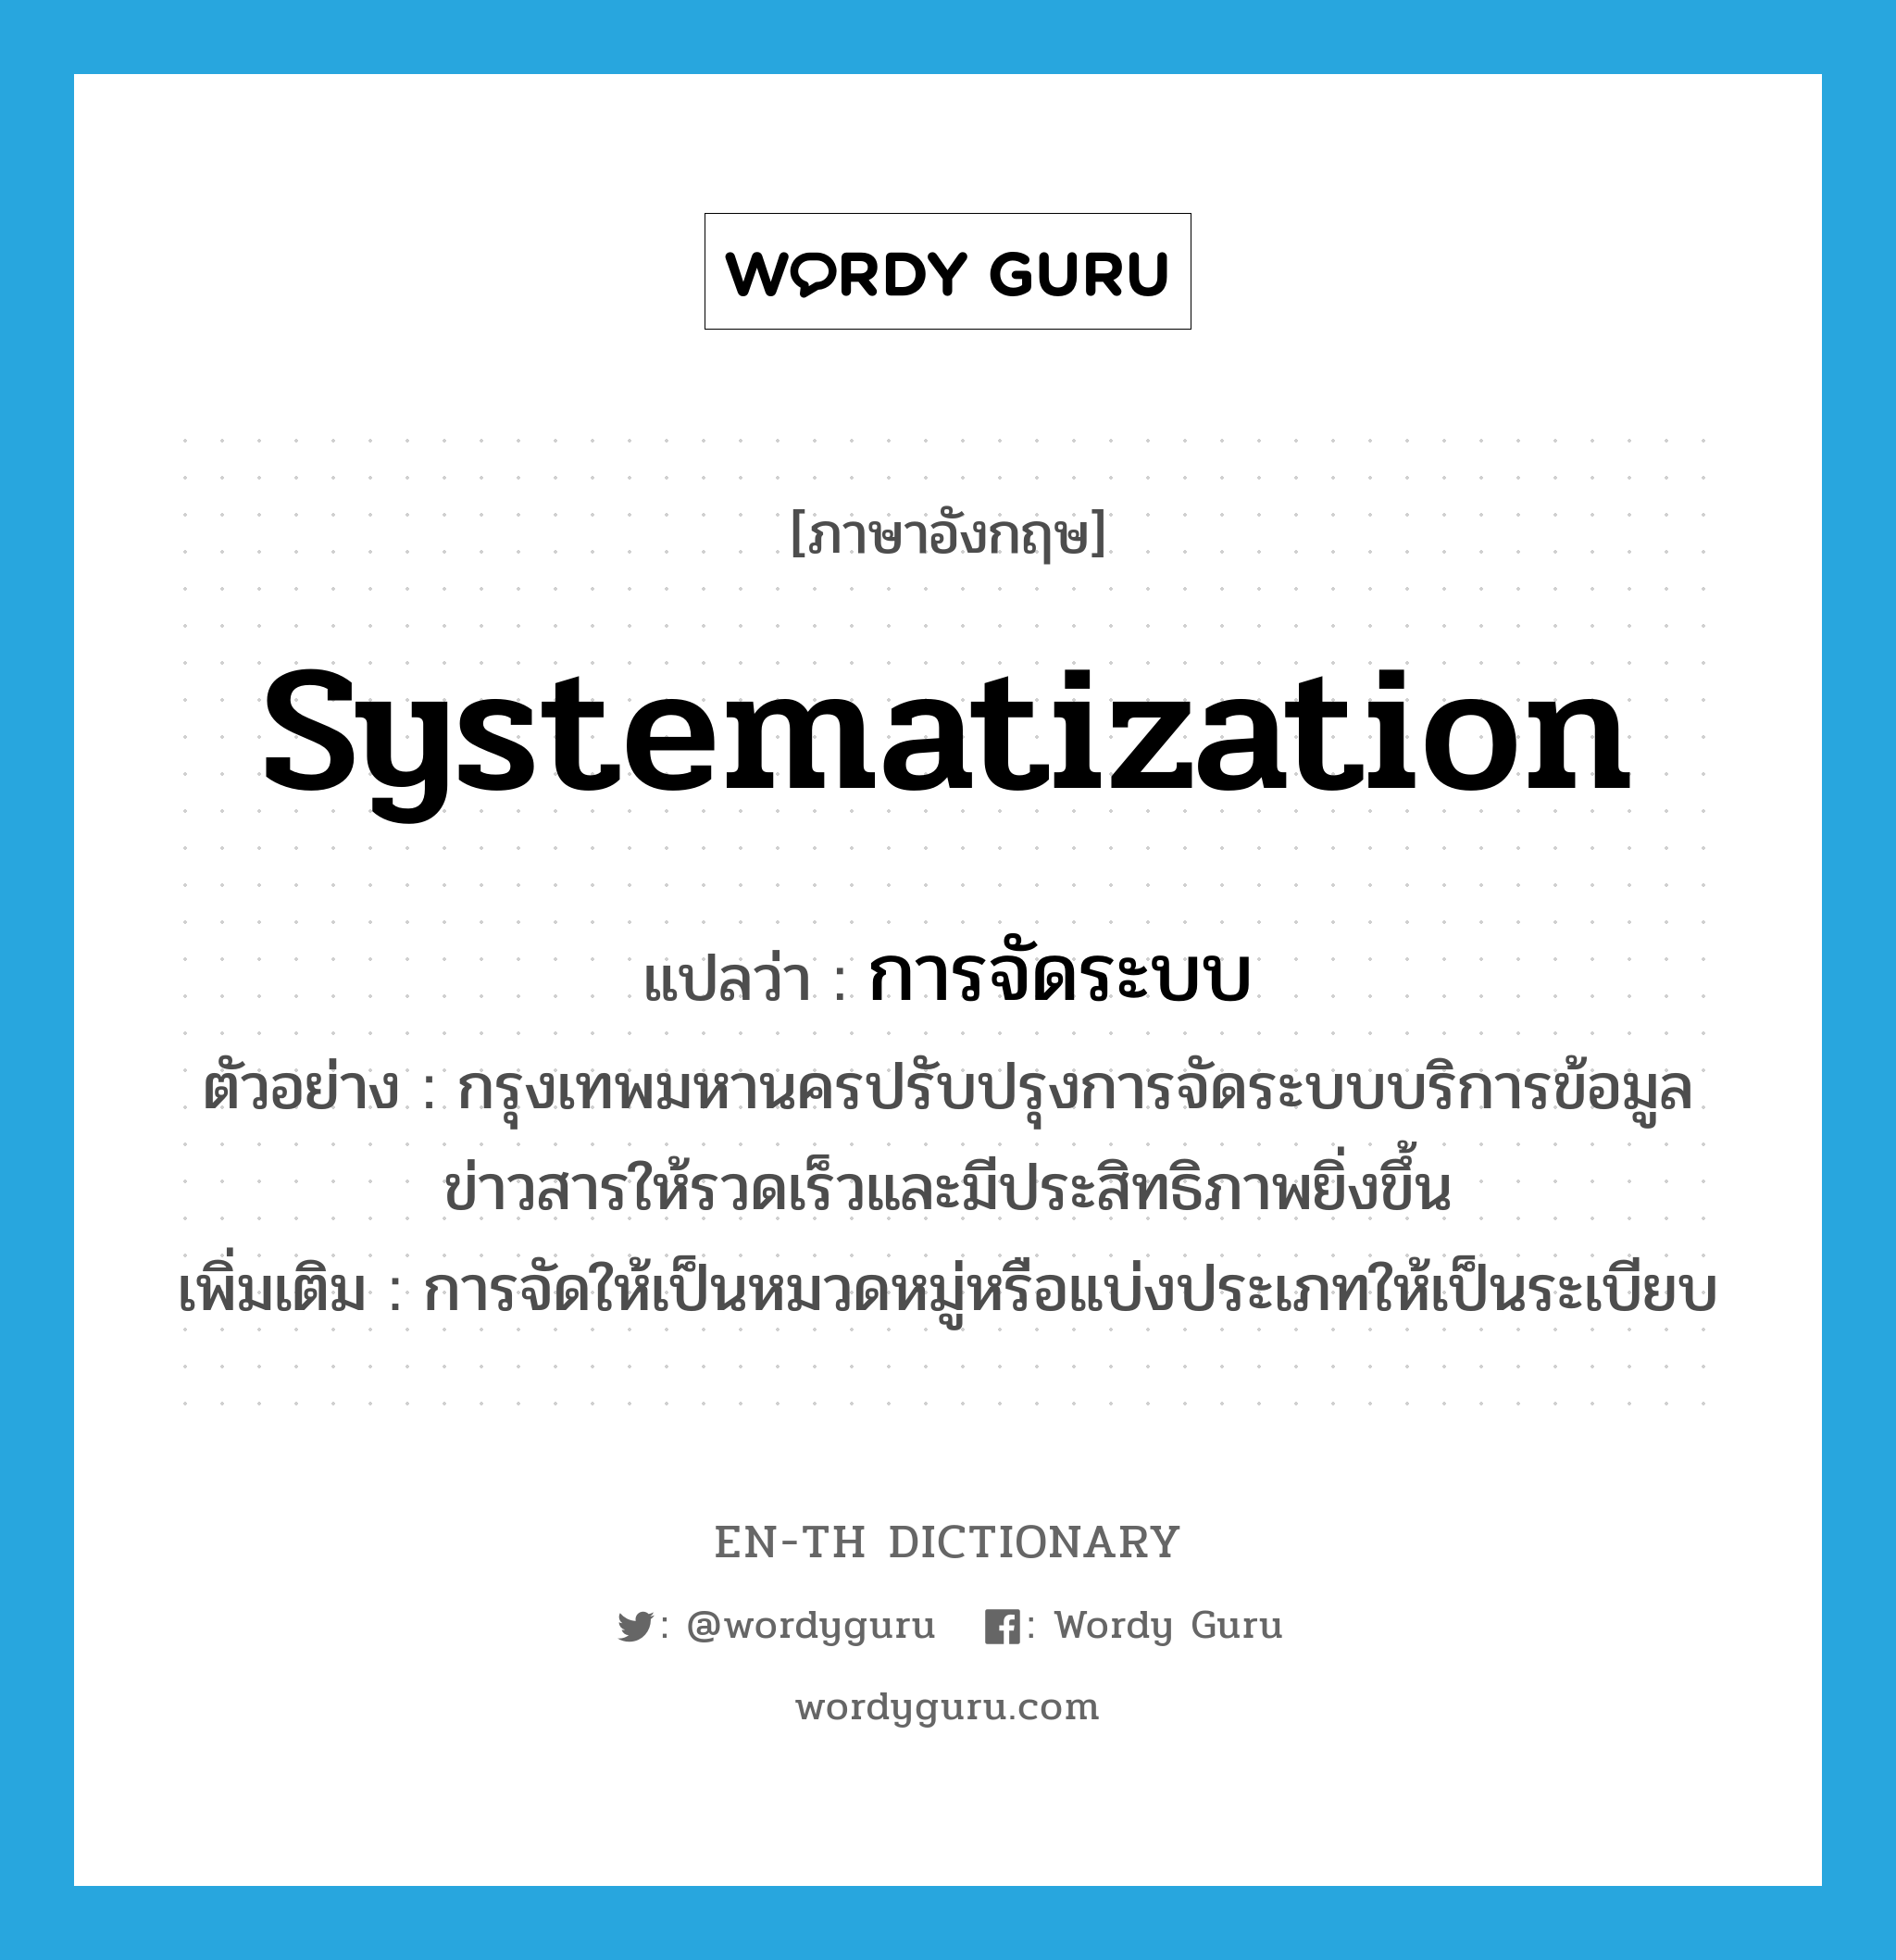 systematization แปลว่า?, คำศัพท์ภาษาอังกฤษ systematization แปลว่า การจัดระบบ ประเภท N ตัวอย่าง กรุงเทพมหานครปรับปรุงการจัดระบบบริการข้อมูลข่าวสารให้รวดเร็วและมีประสิทธิภาพยิ่งขึ้น เพิ่มเติม การจัดให้เป็นหมวดหมู่หรือแบ่งประเภทให้เป็นระเบียบ หมวด N